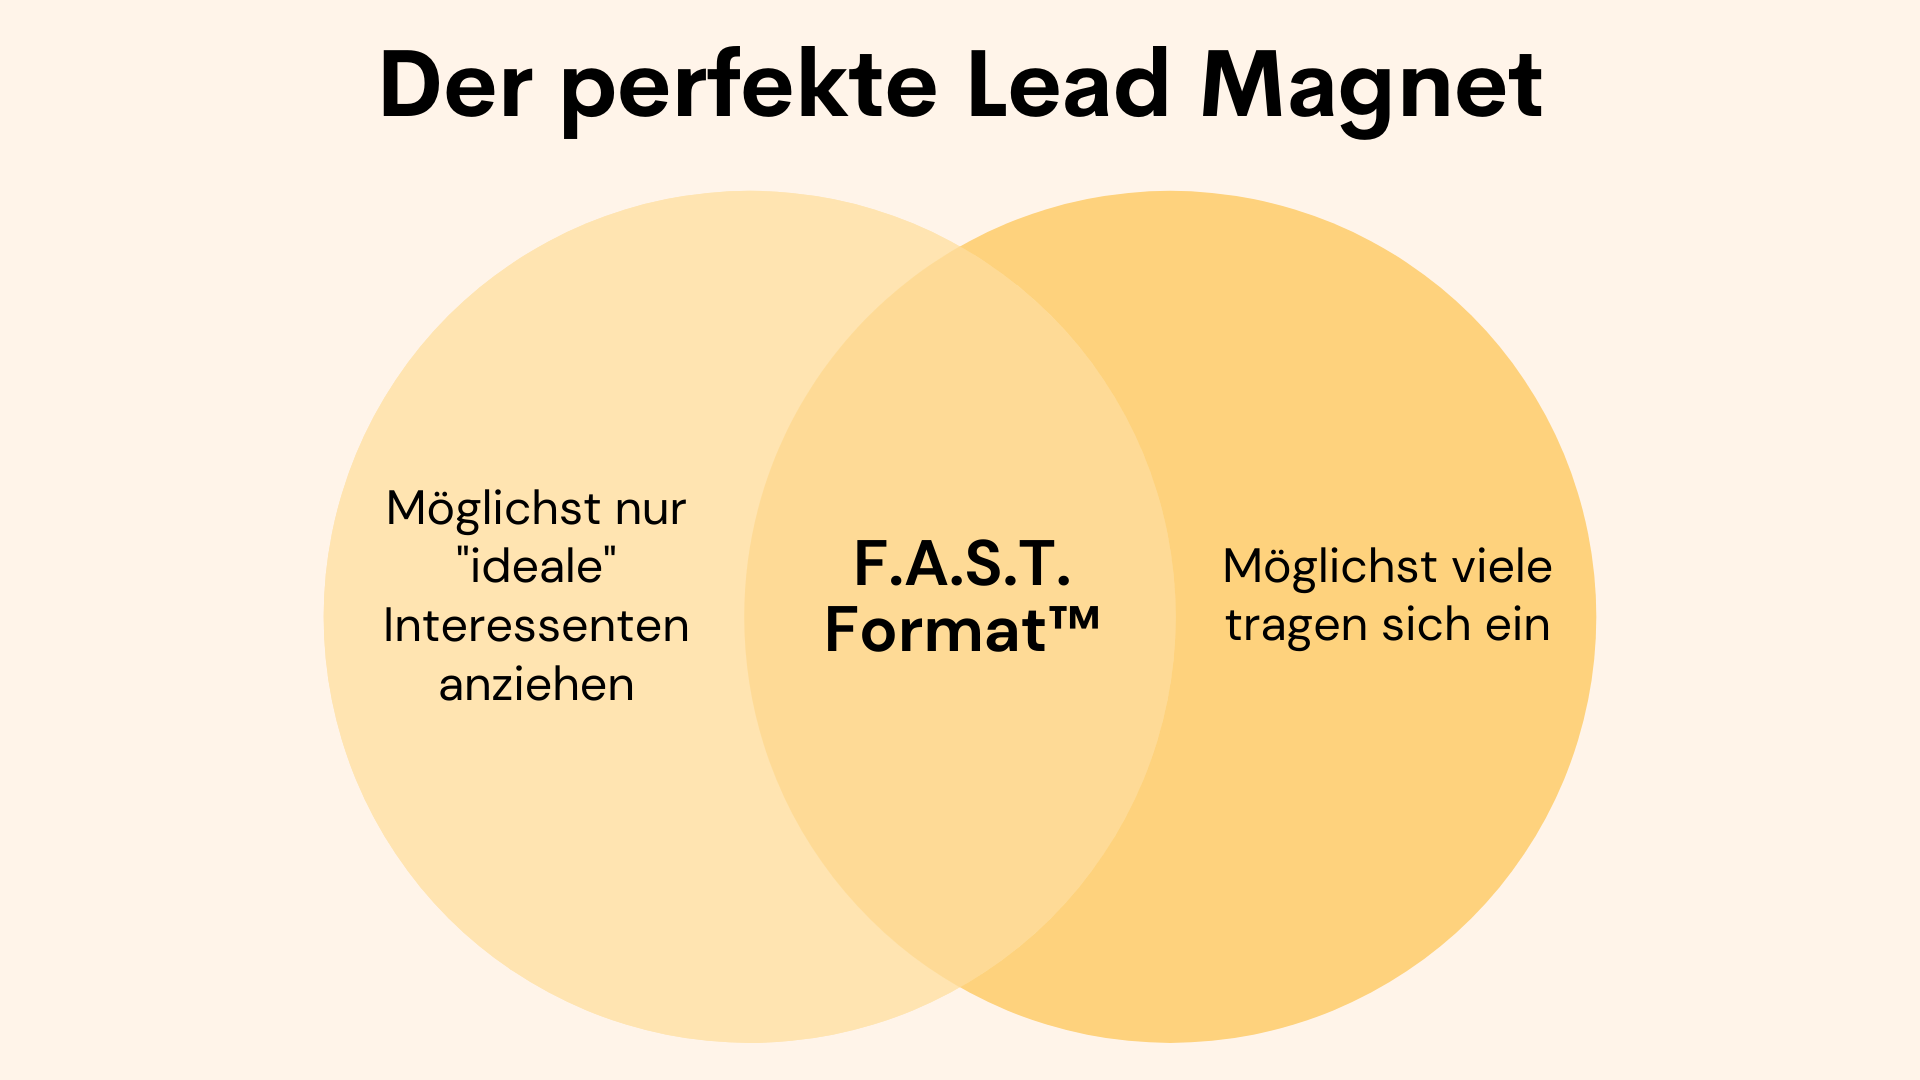 Diagramm zeigt den Aufbau des perfekten Lead Magneten